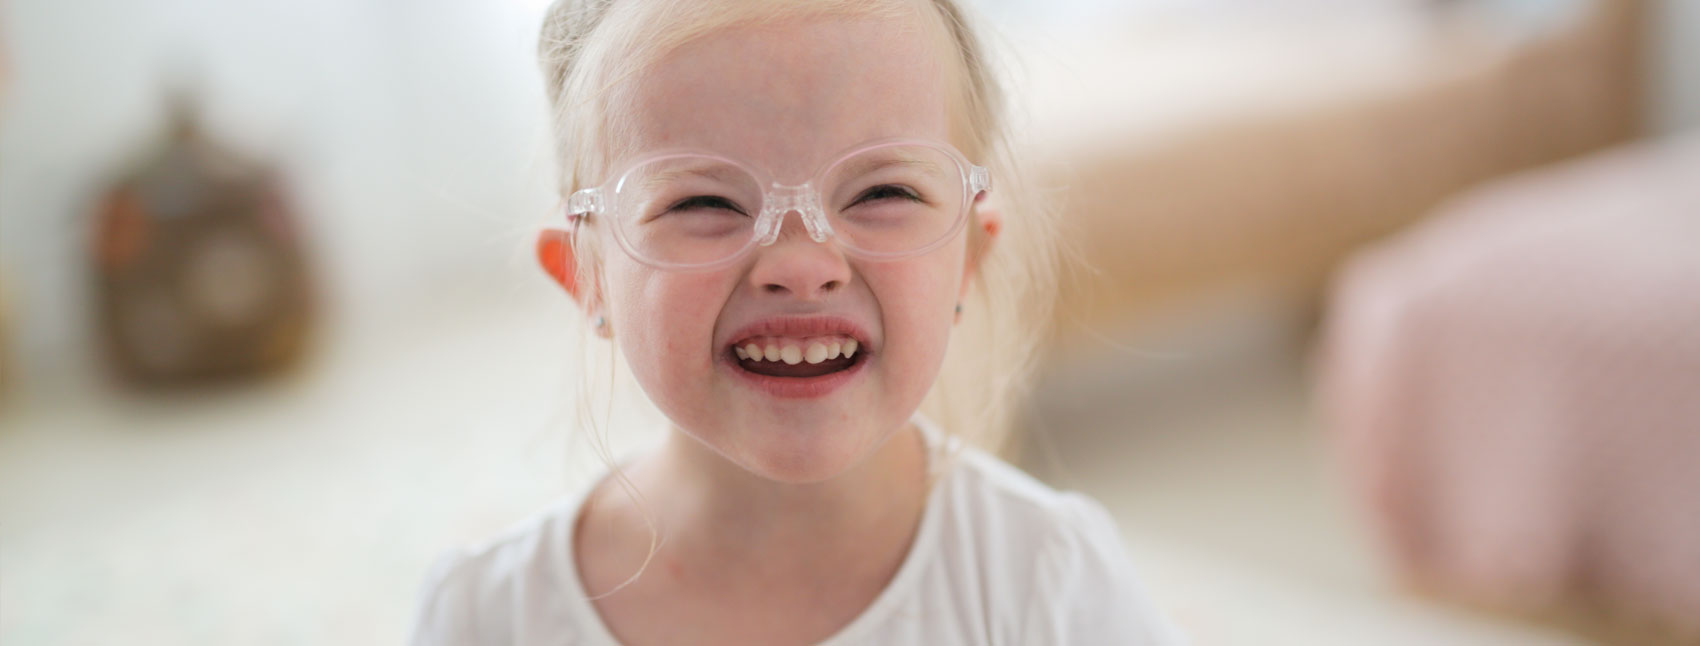 little-girl-wearing-glasses